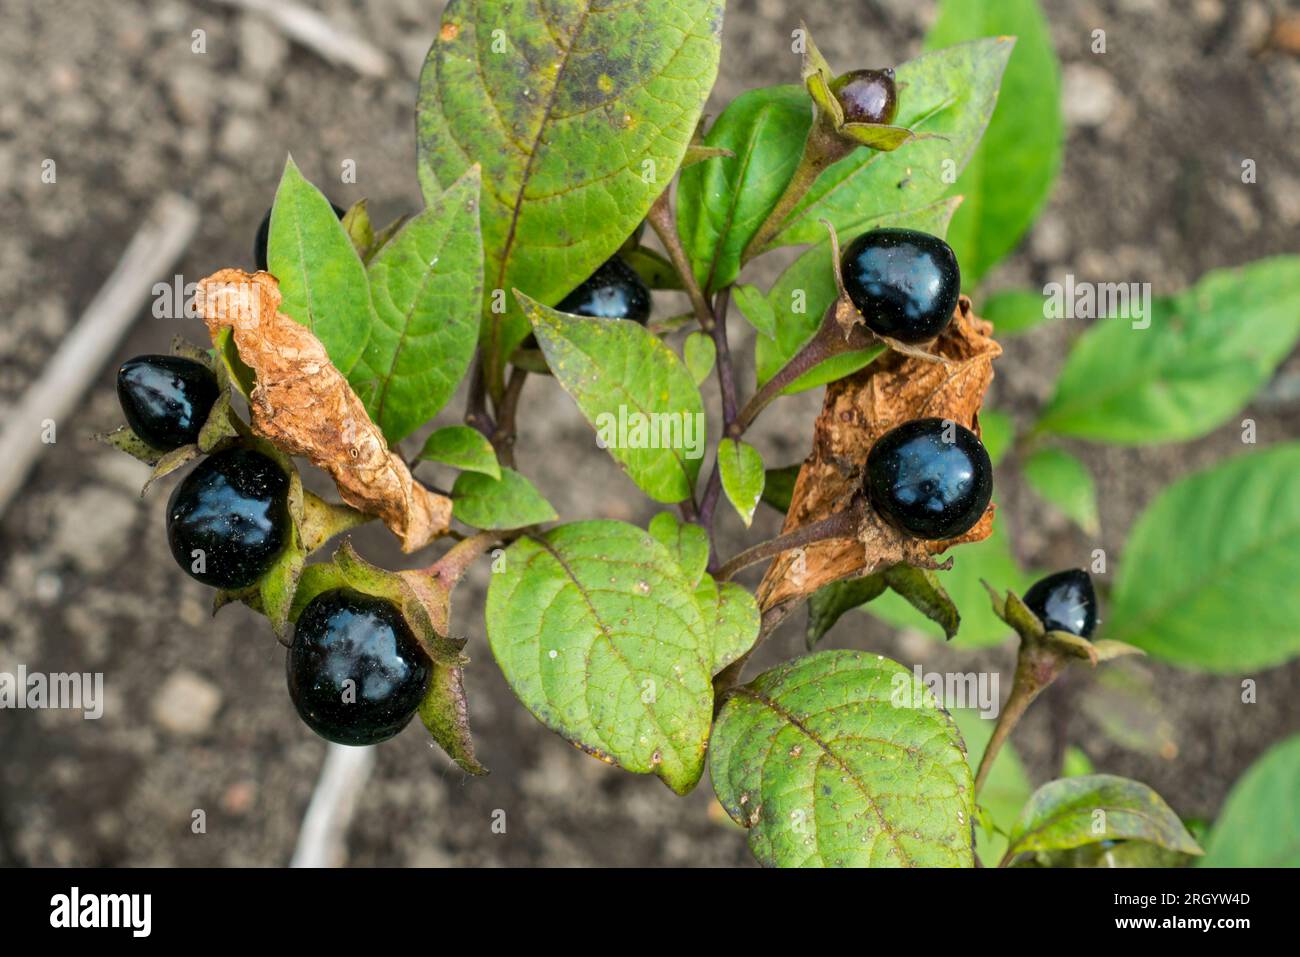 Belladonna / Deadly nightshade (Atropa belladonna), pianta erbacea perenne tossica, primo piano di bacche nere velenose e foglie in estate Foto Stock